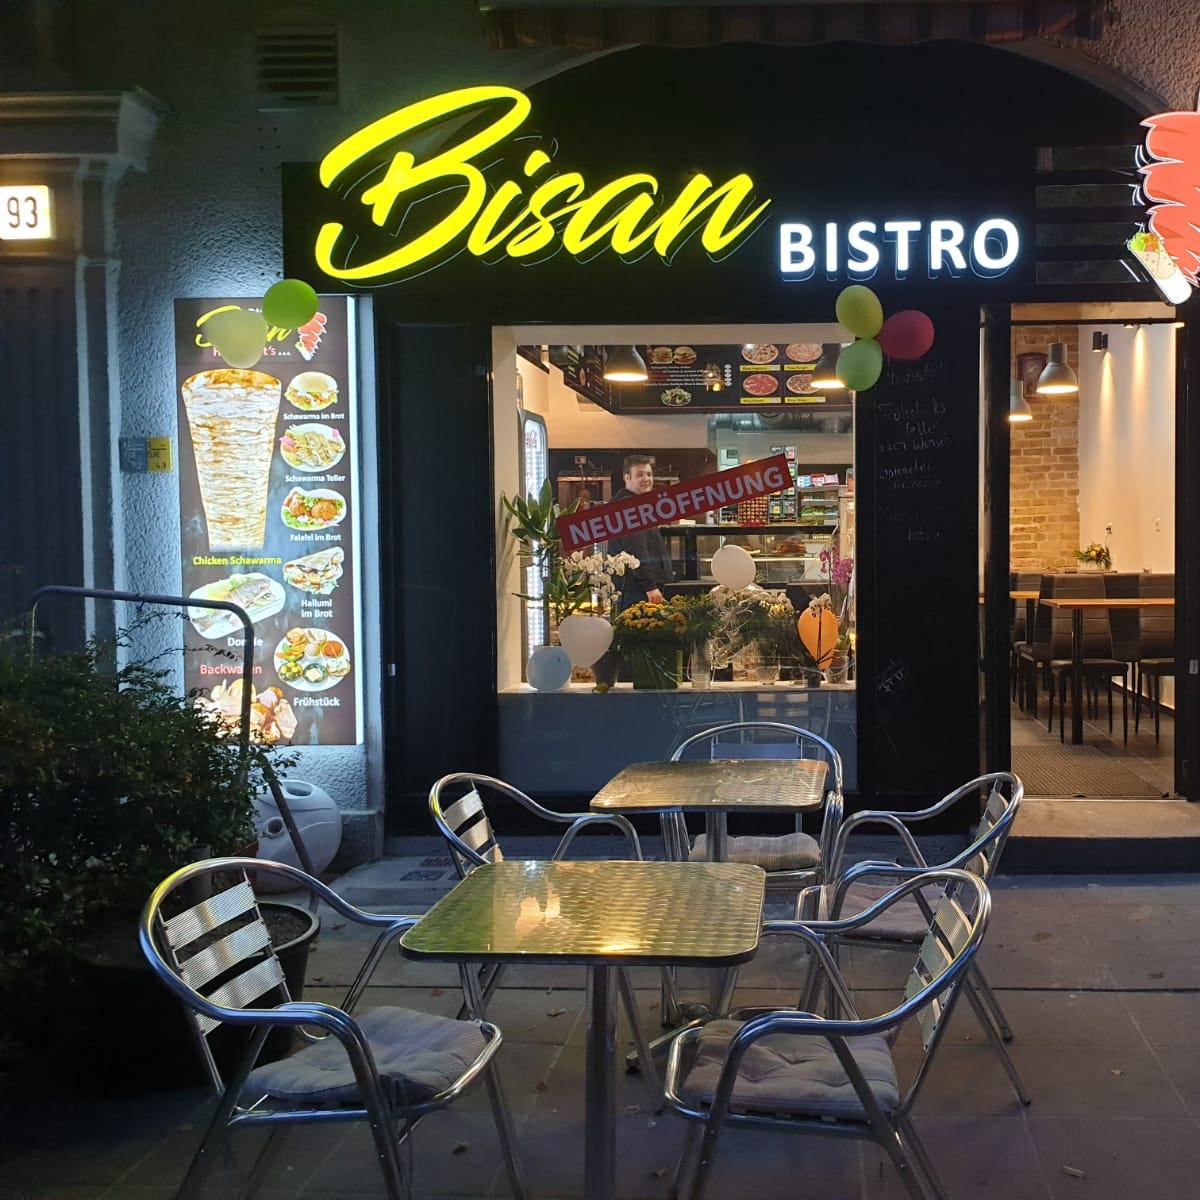 Restaurant "Bisan Bistro" in Berlin